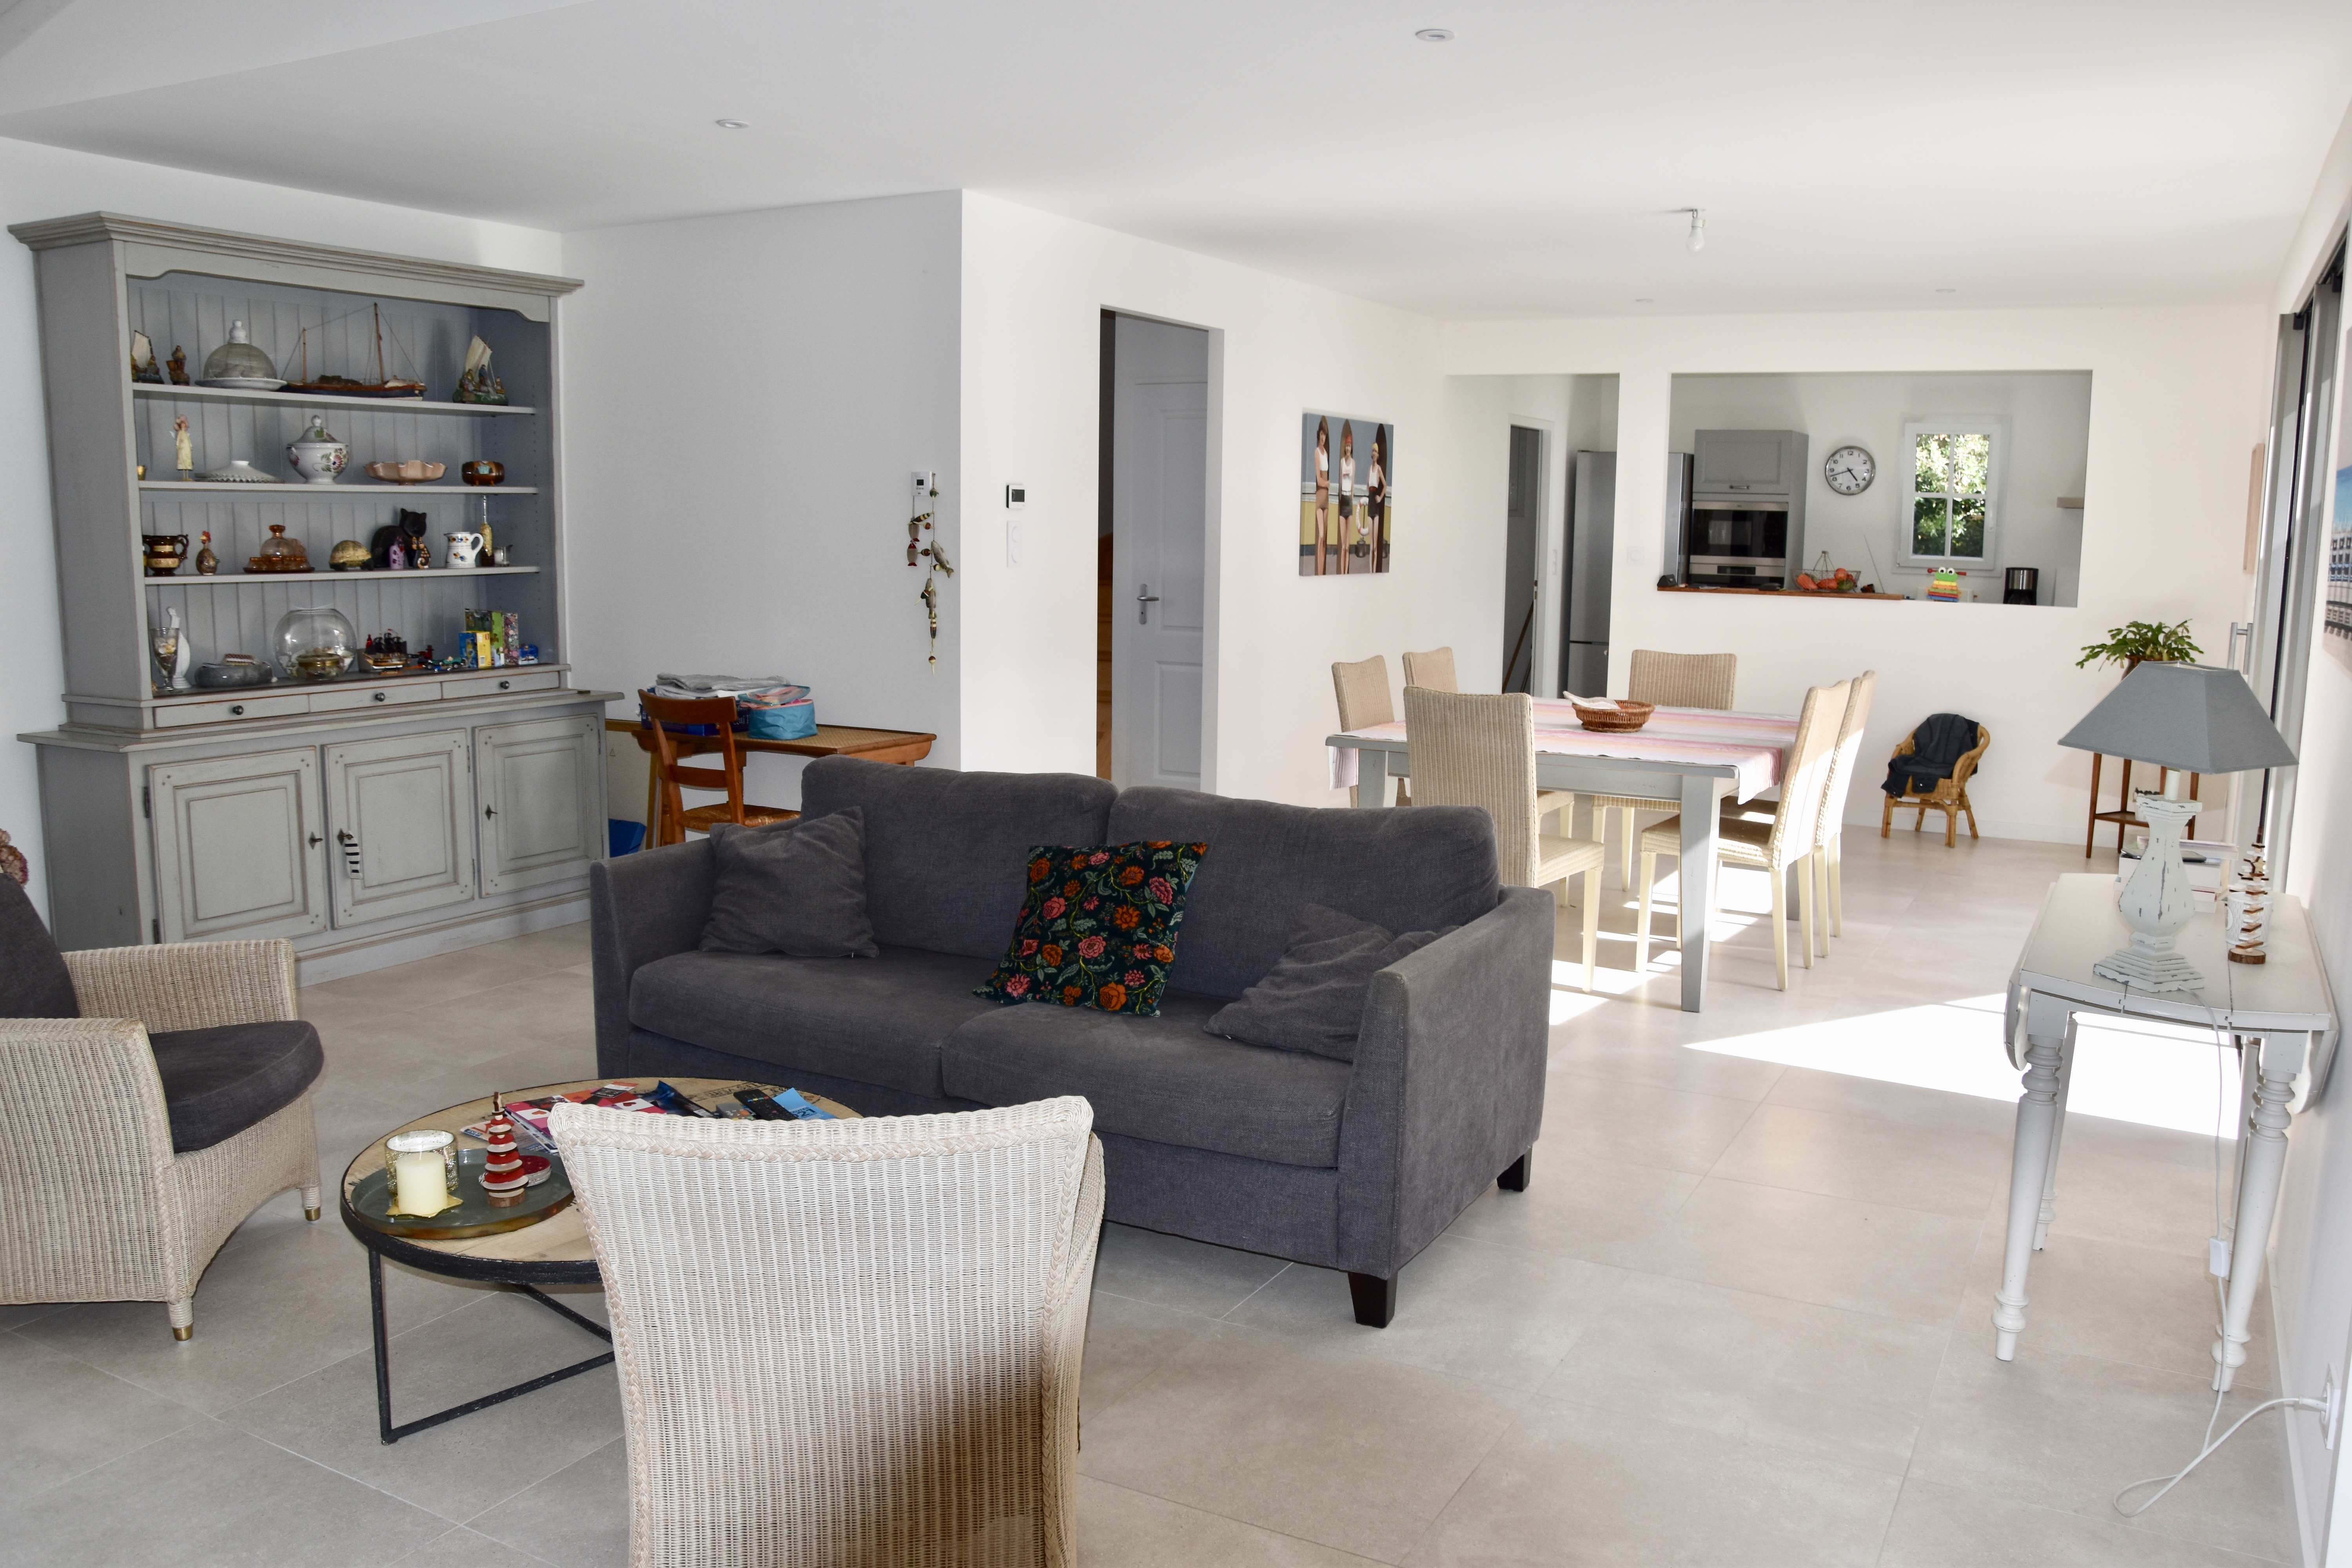 Vente maison 724 500 € Noirmoutier en l'Ile